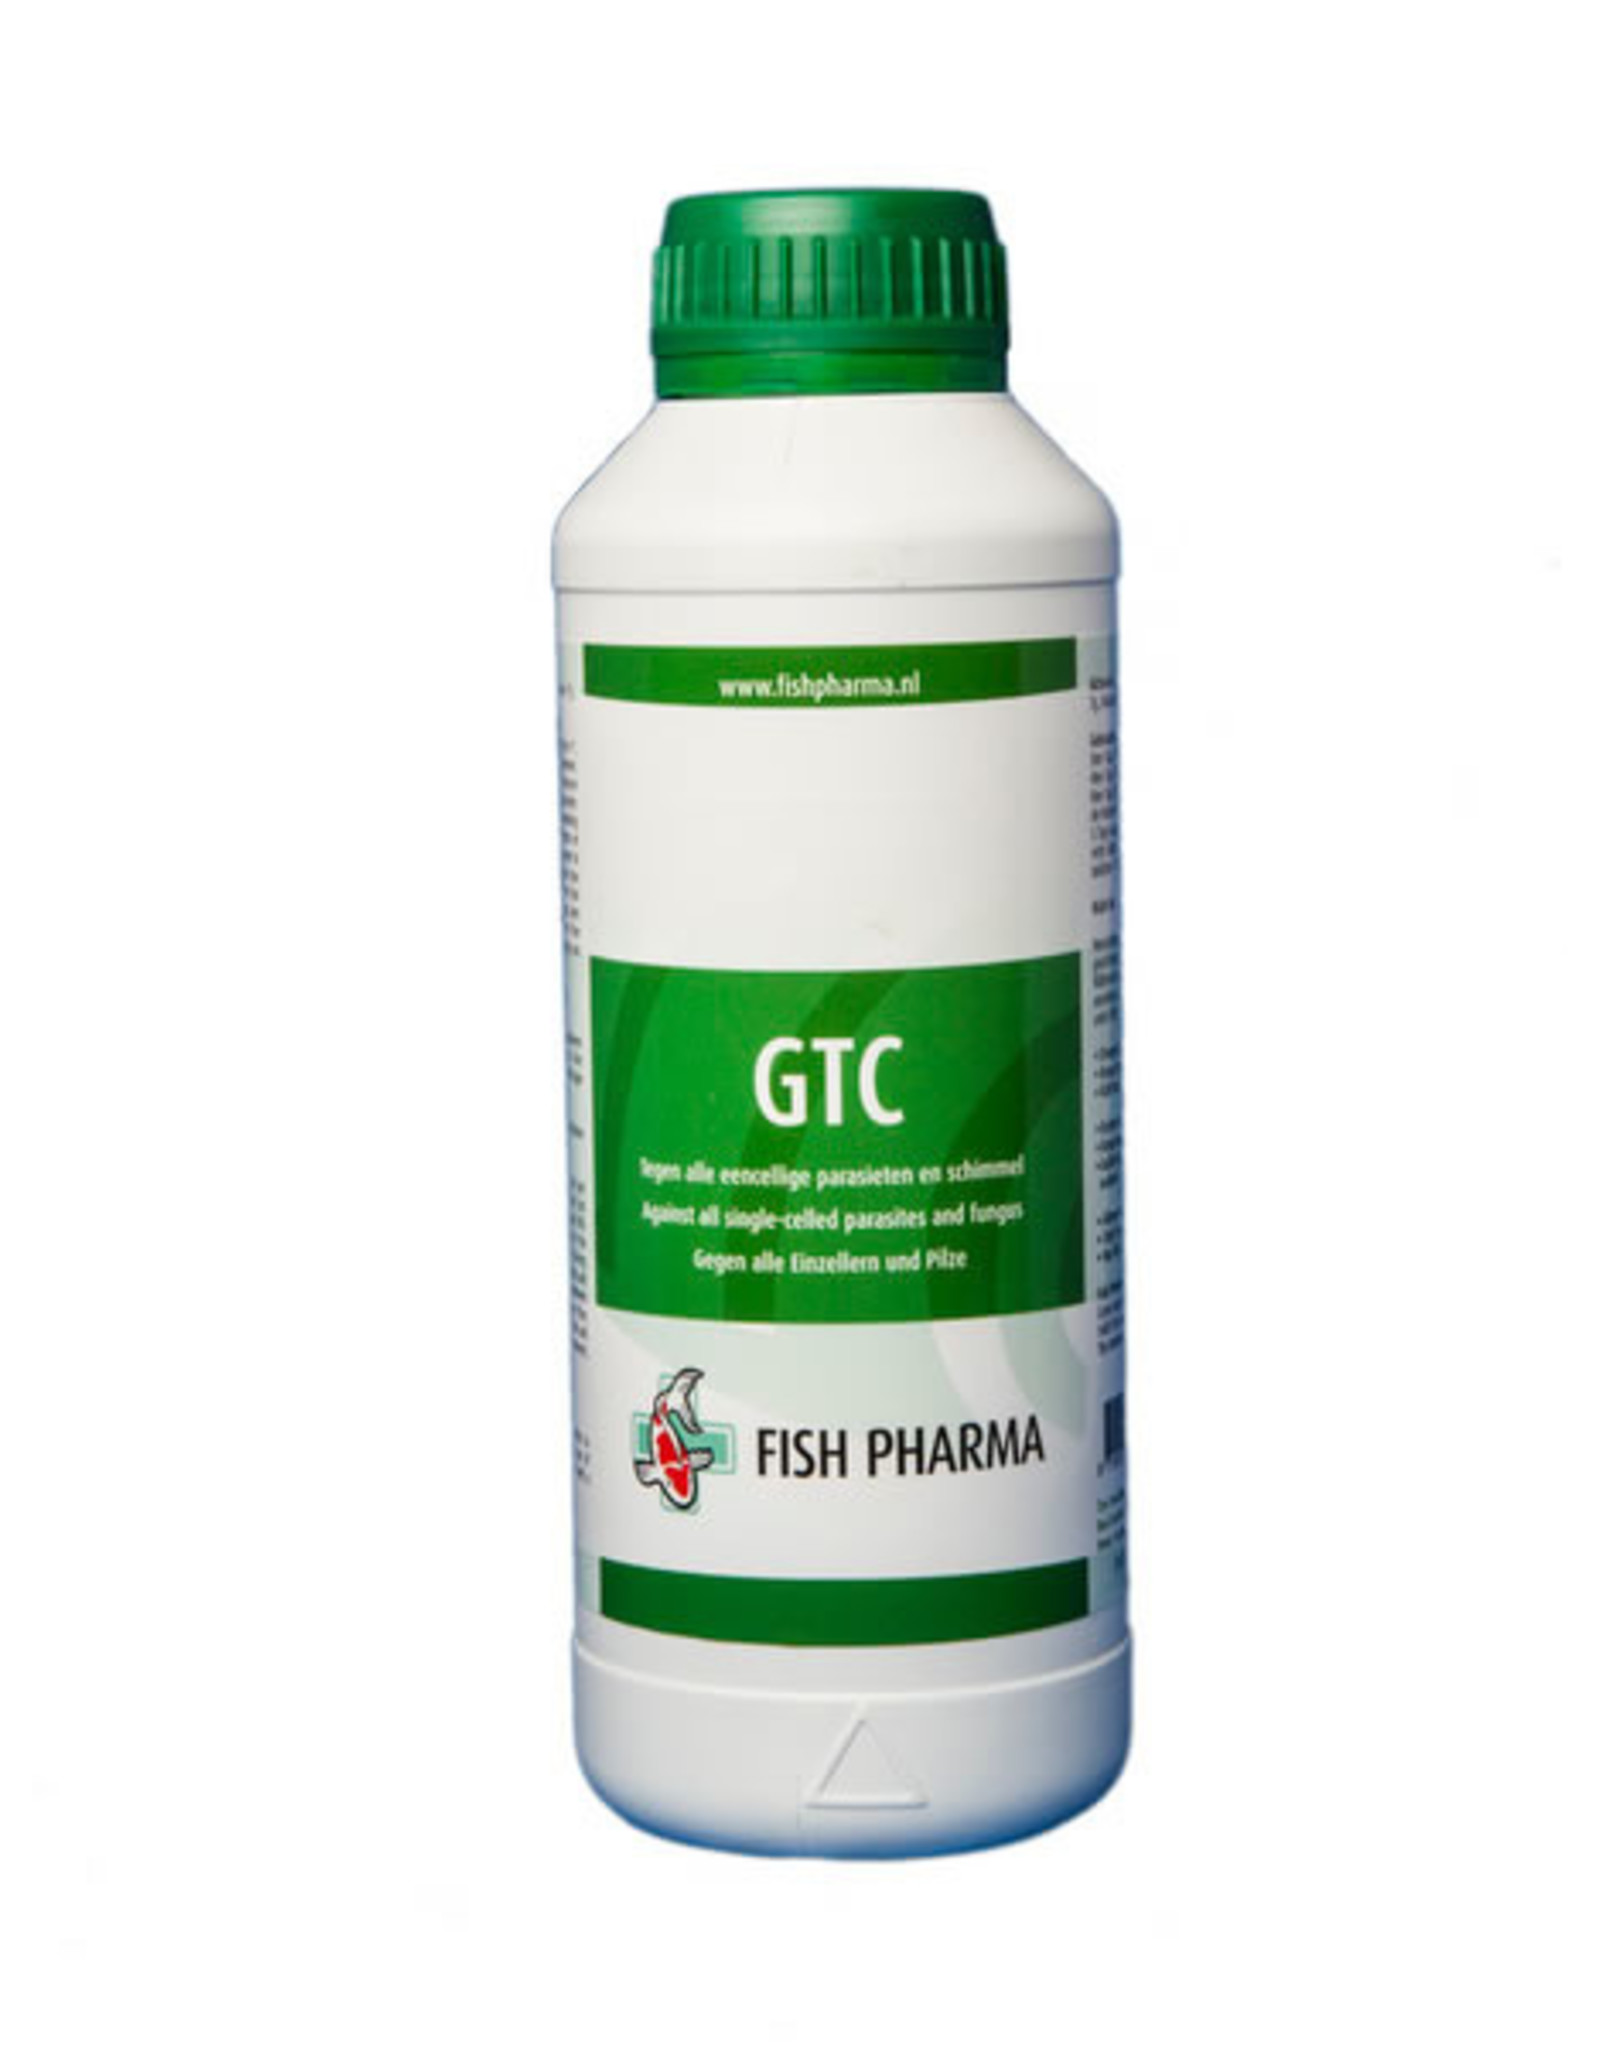 Fish Pharma GTC gegen alle einzelligen Parasiten.